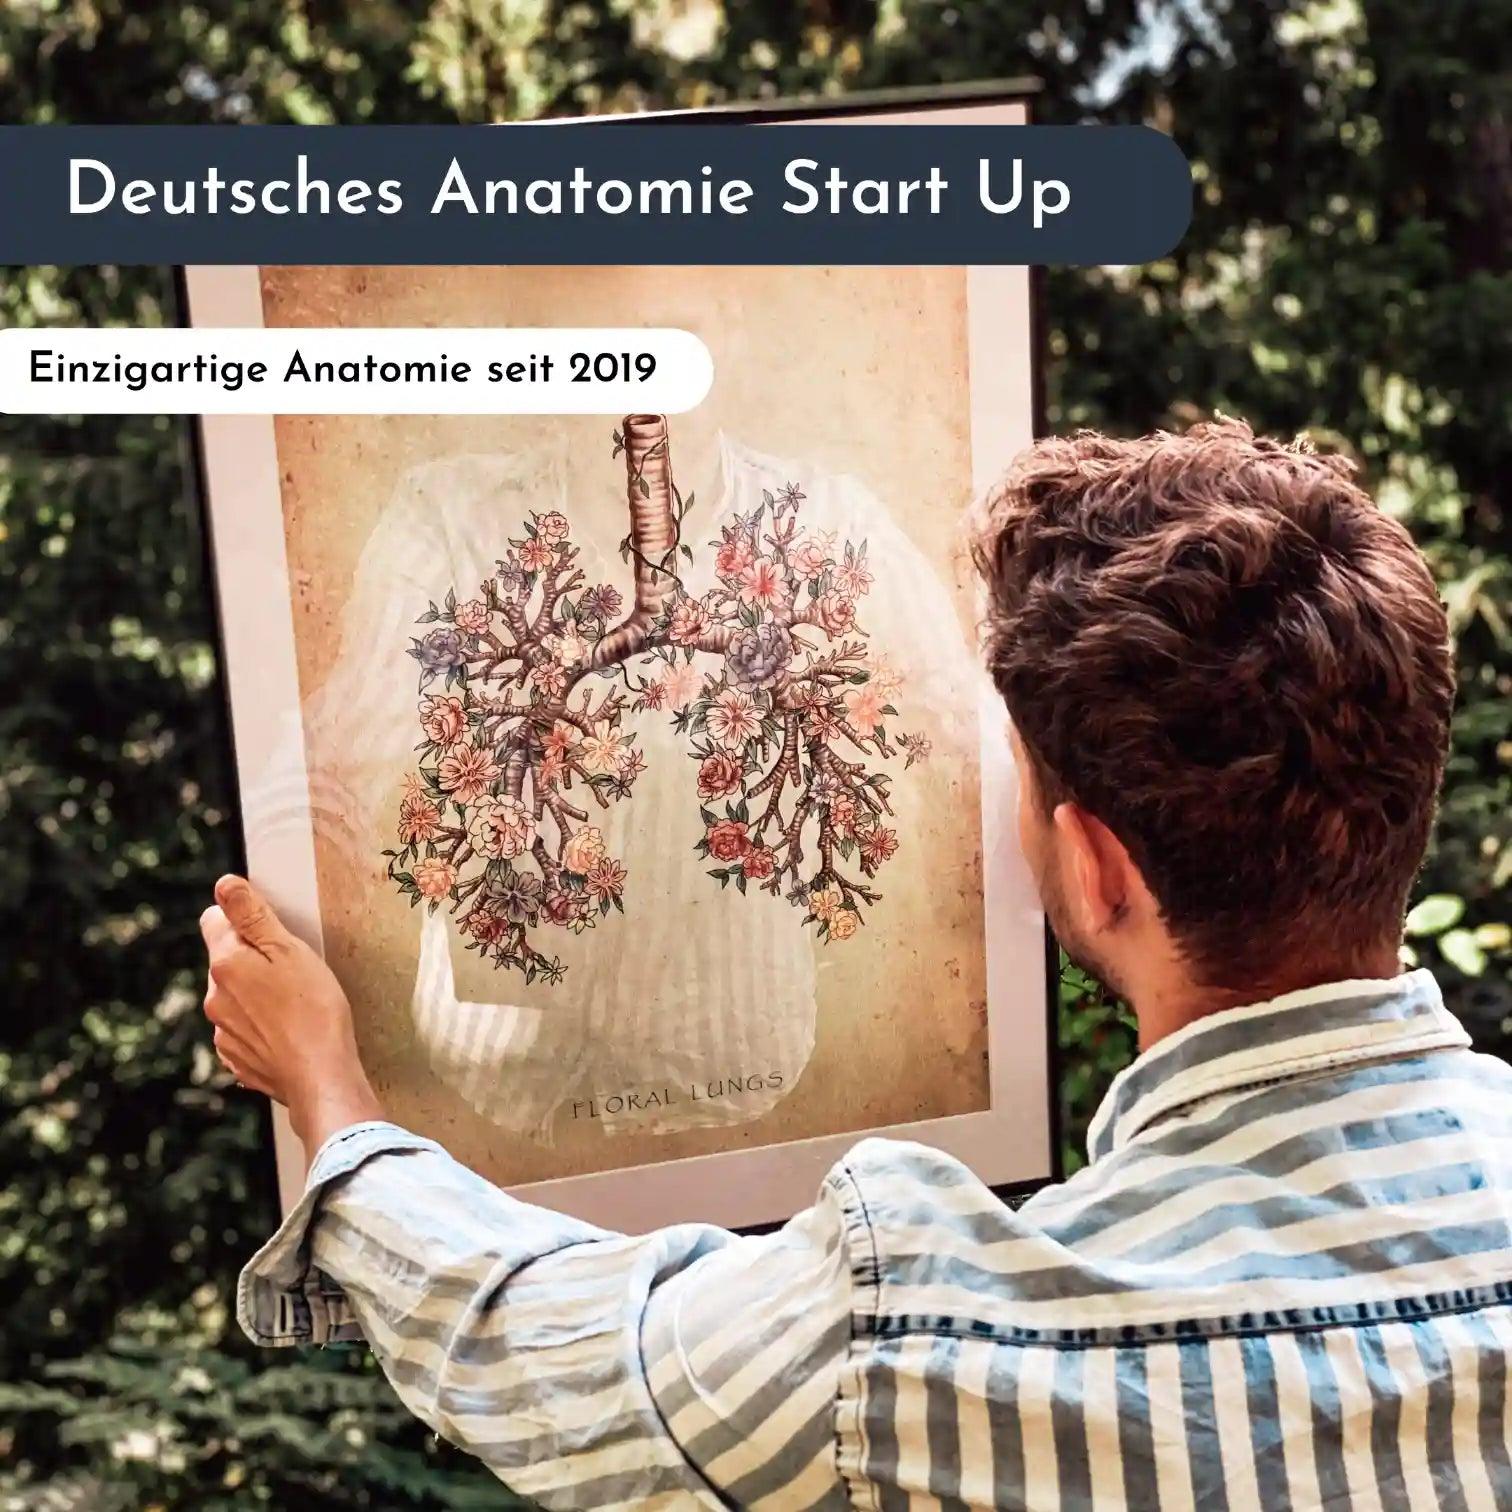 Becken Anatomie Sammlung - Chalkboard - Animus Medicus GmbH